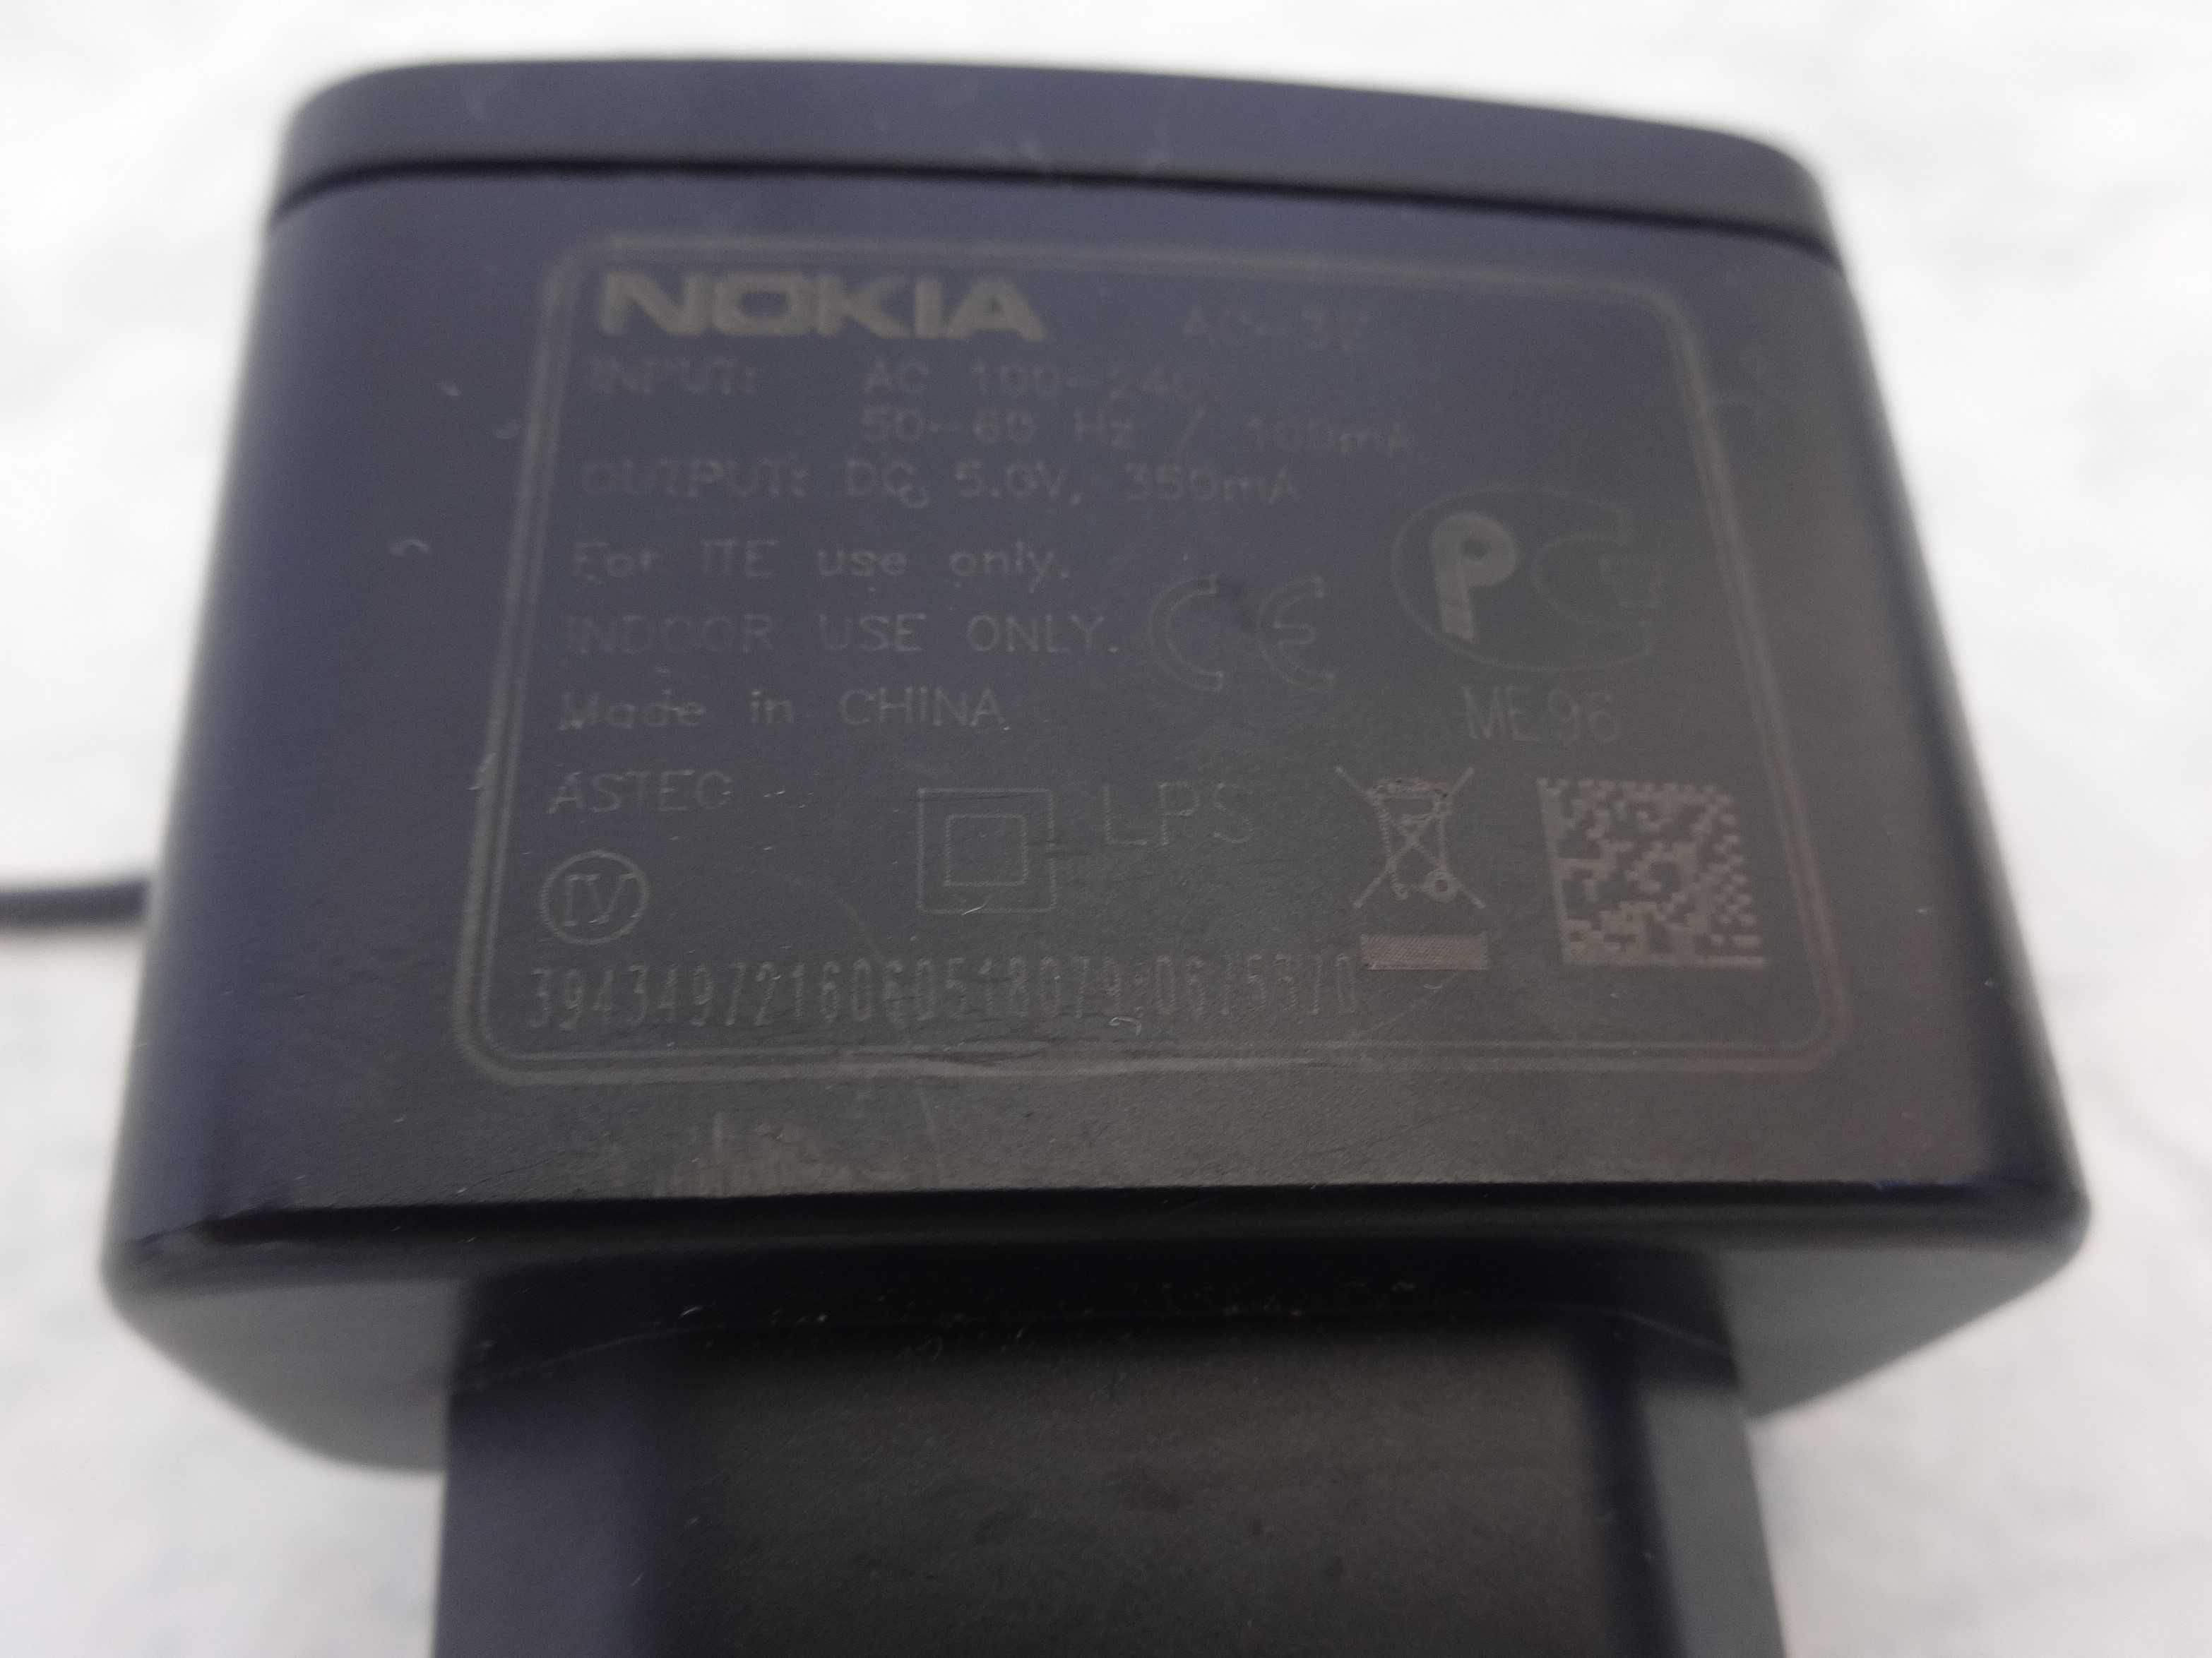 Carregador de Telemóvel "Nokia"